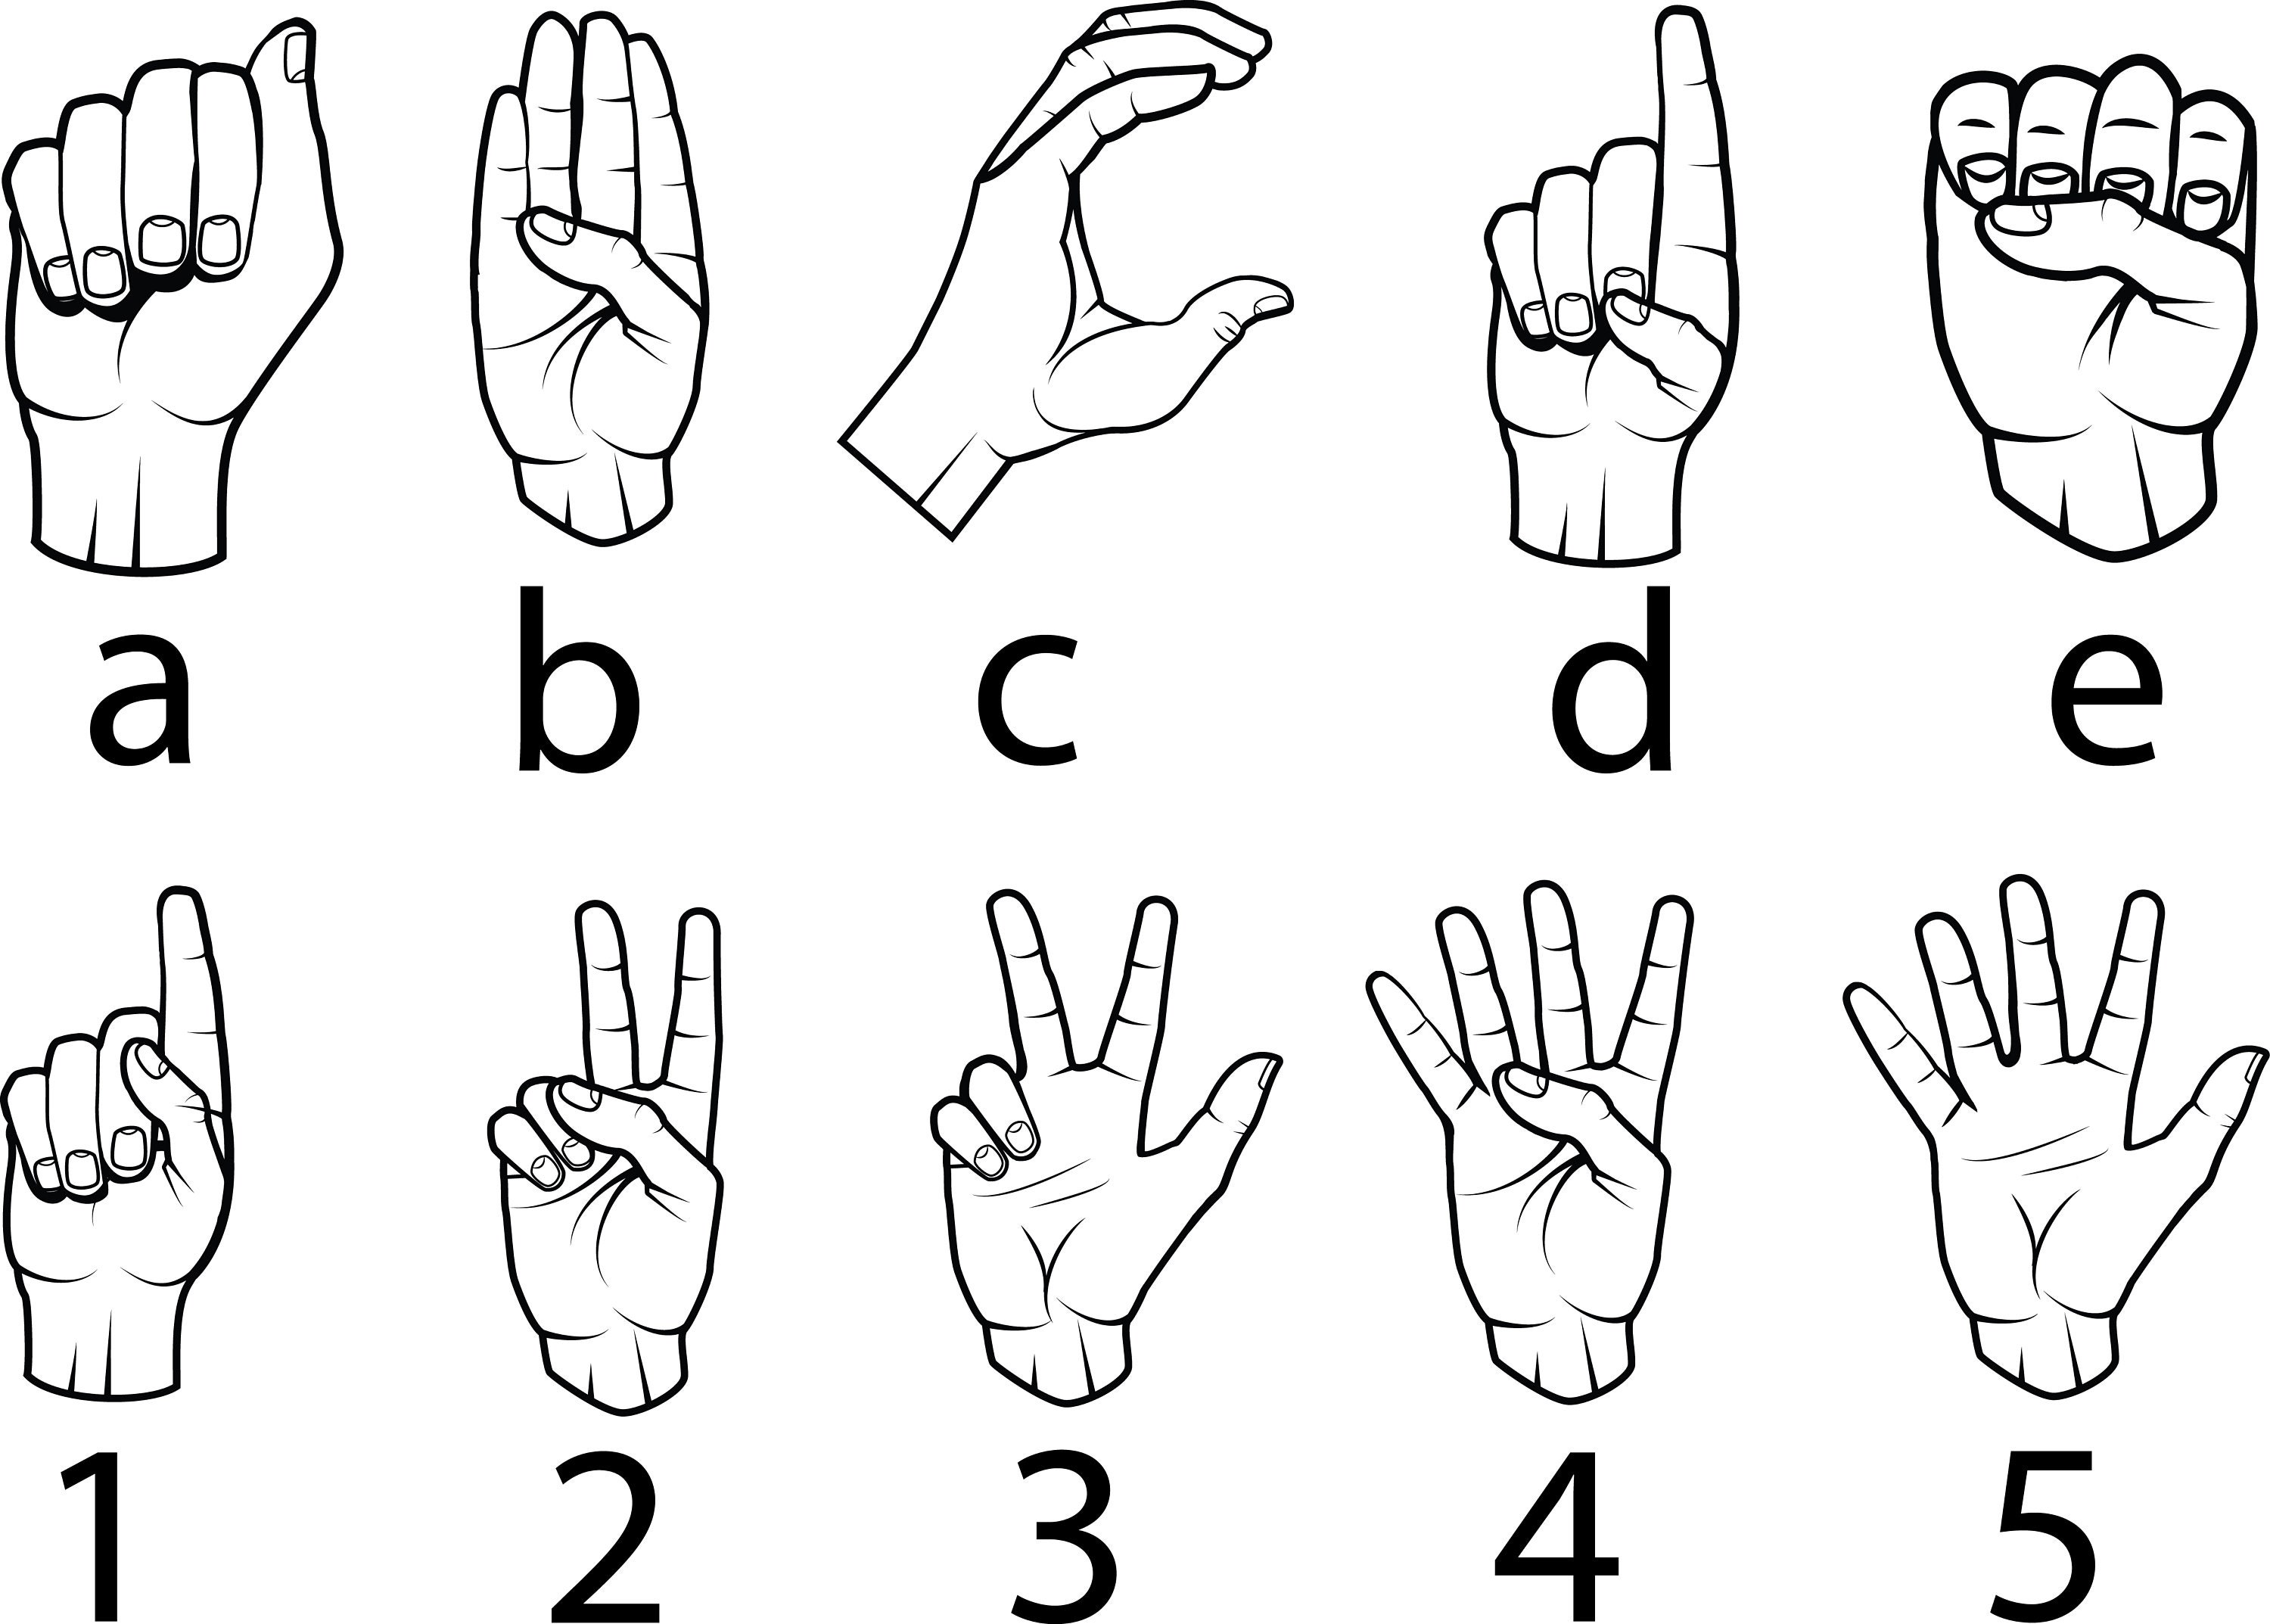 american-sign-language-svg-fuente-de-lengua-de-signos-etsy-m-xico